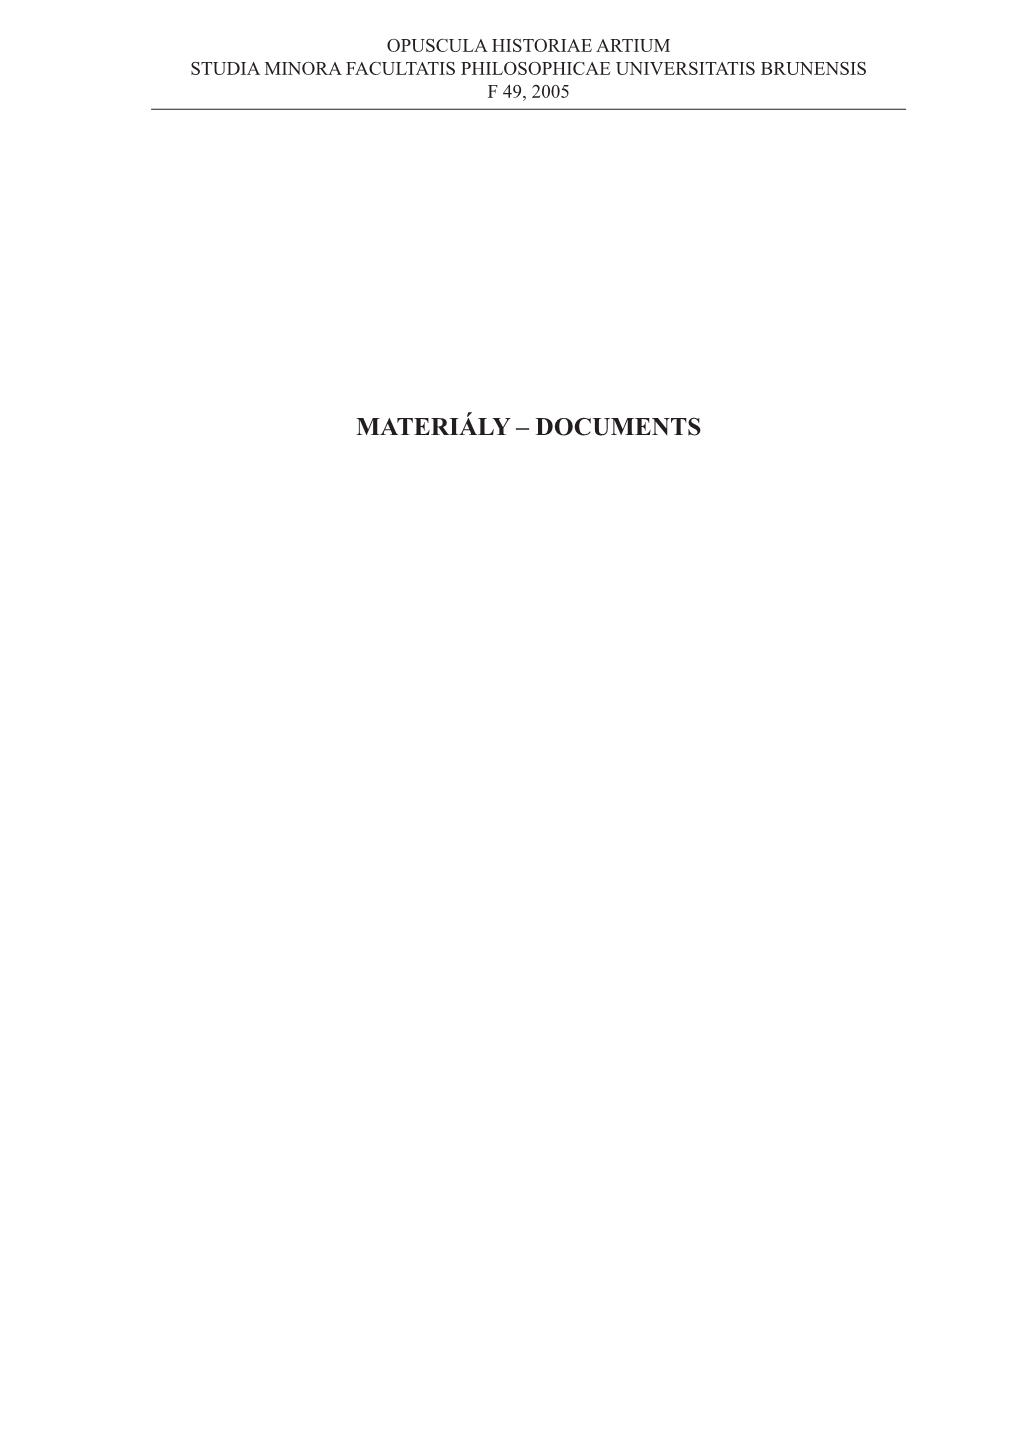 Materiály – Documents